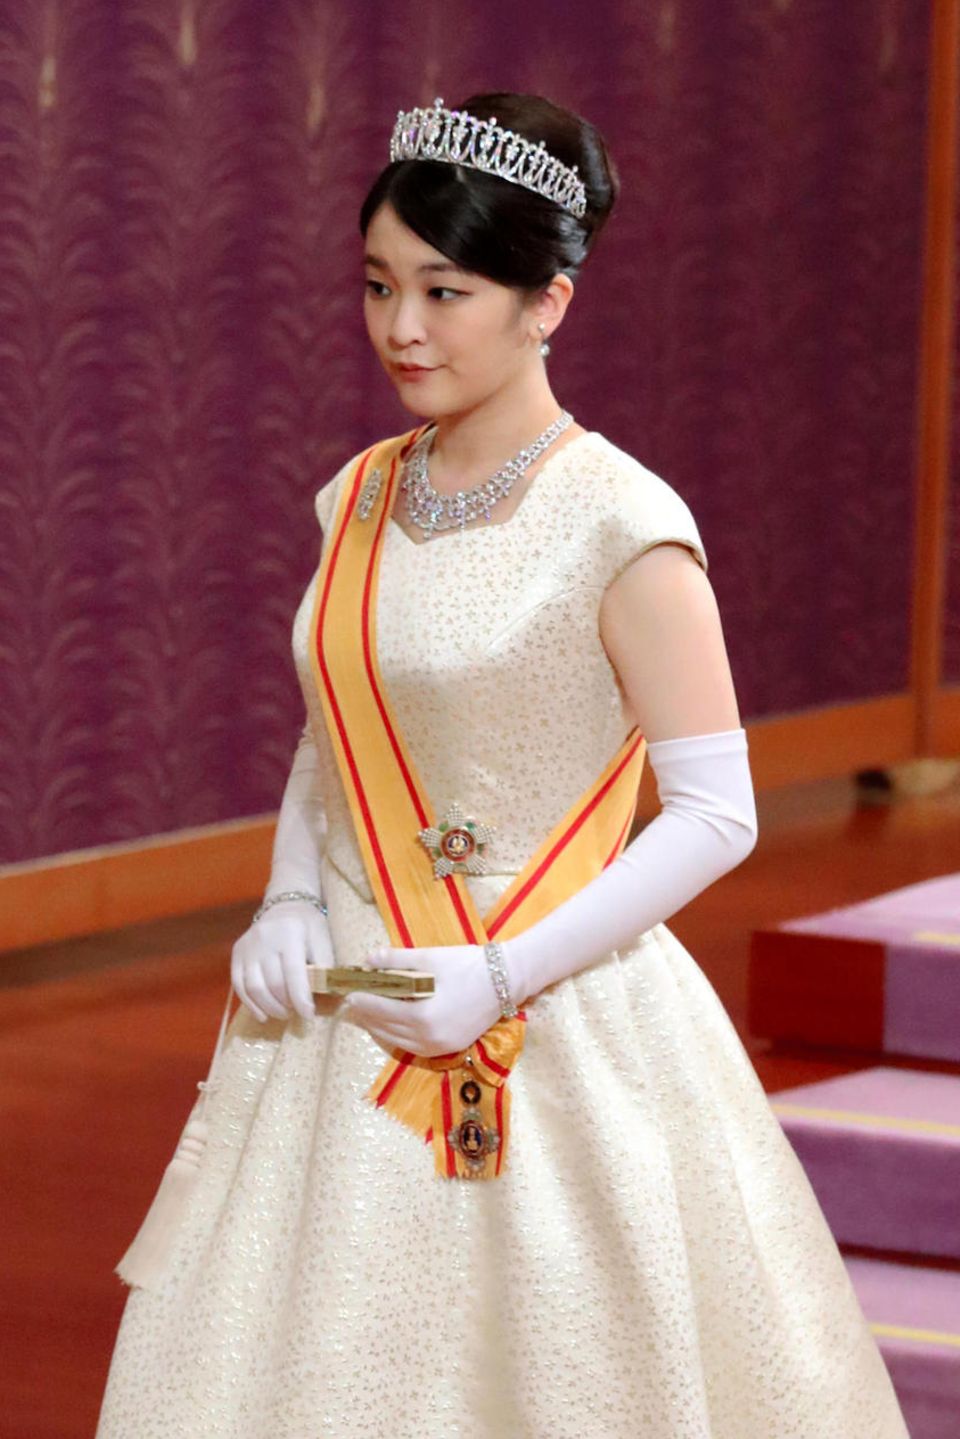 Prinzessin Mako ist die Enkelin von Kaiser Akihito von Japan 